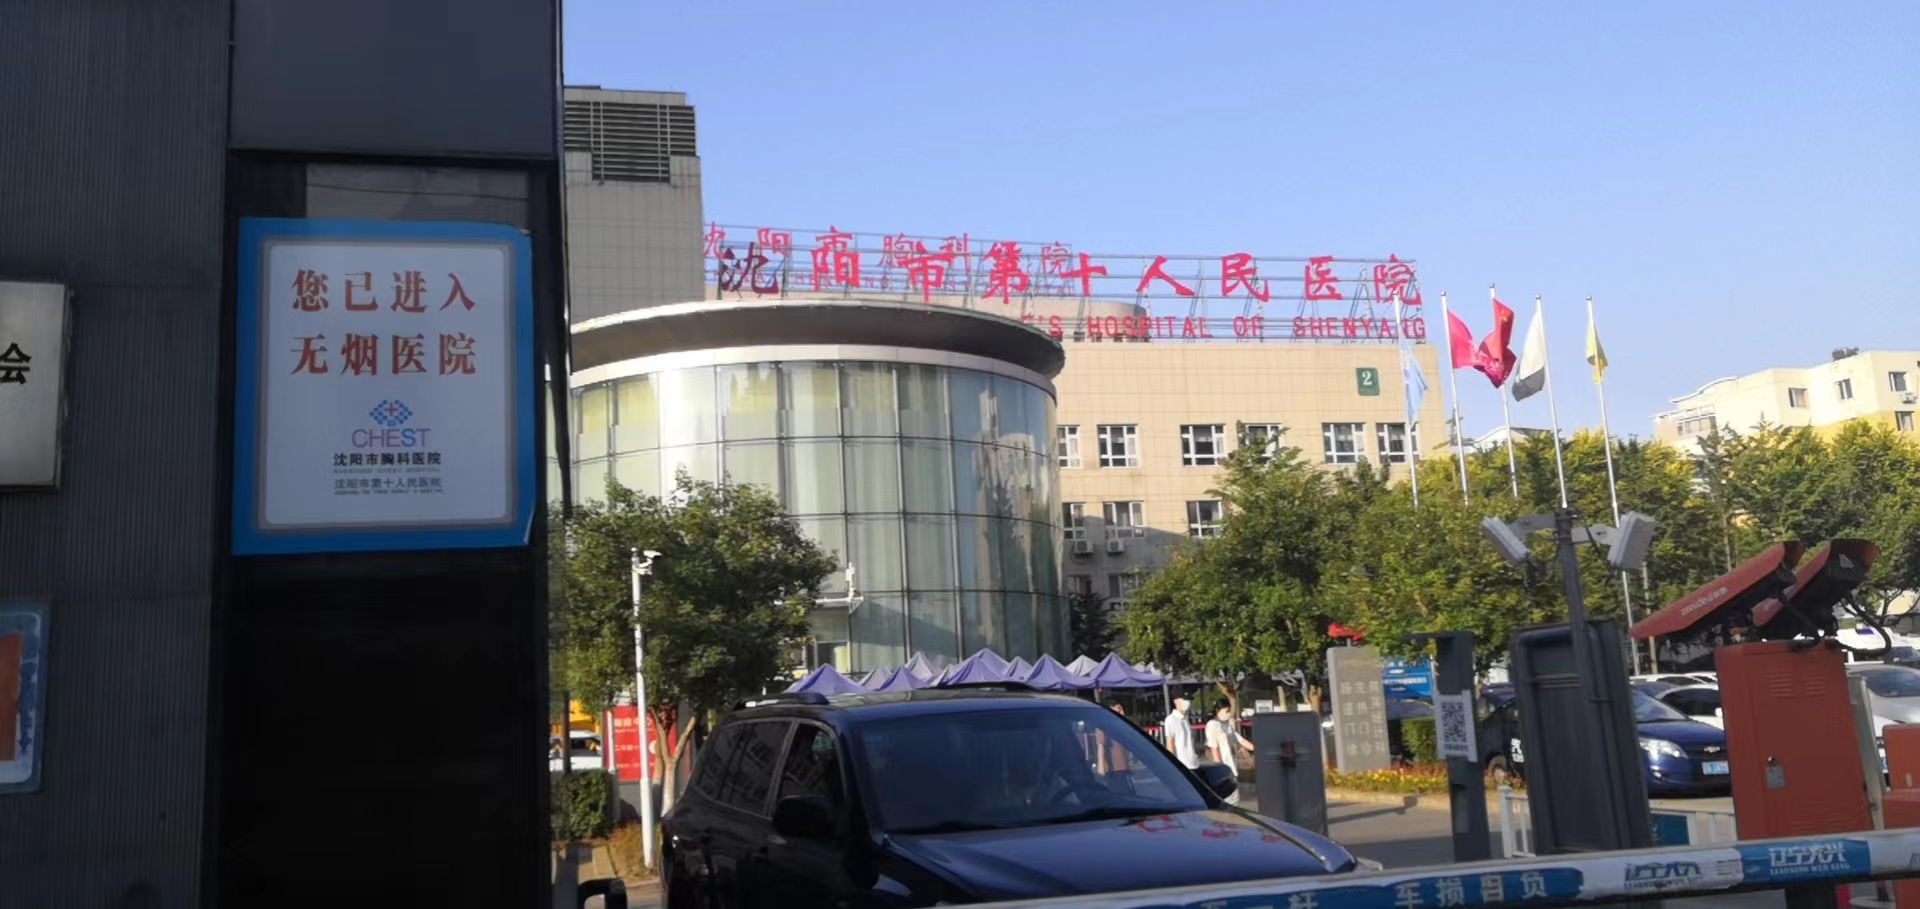 东紫无磁层流净化空气消毒机入驻沈阳市胸科医院